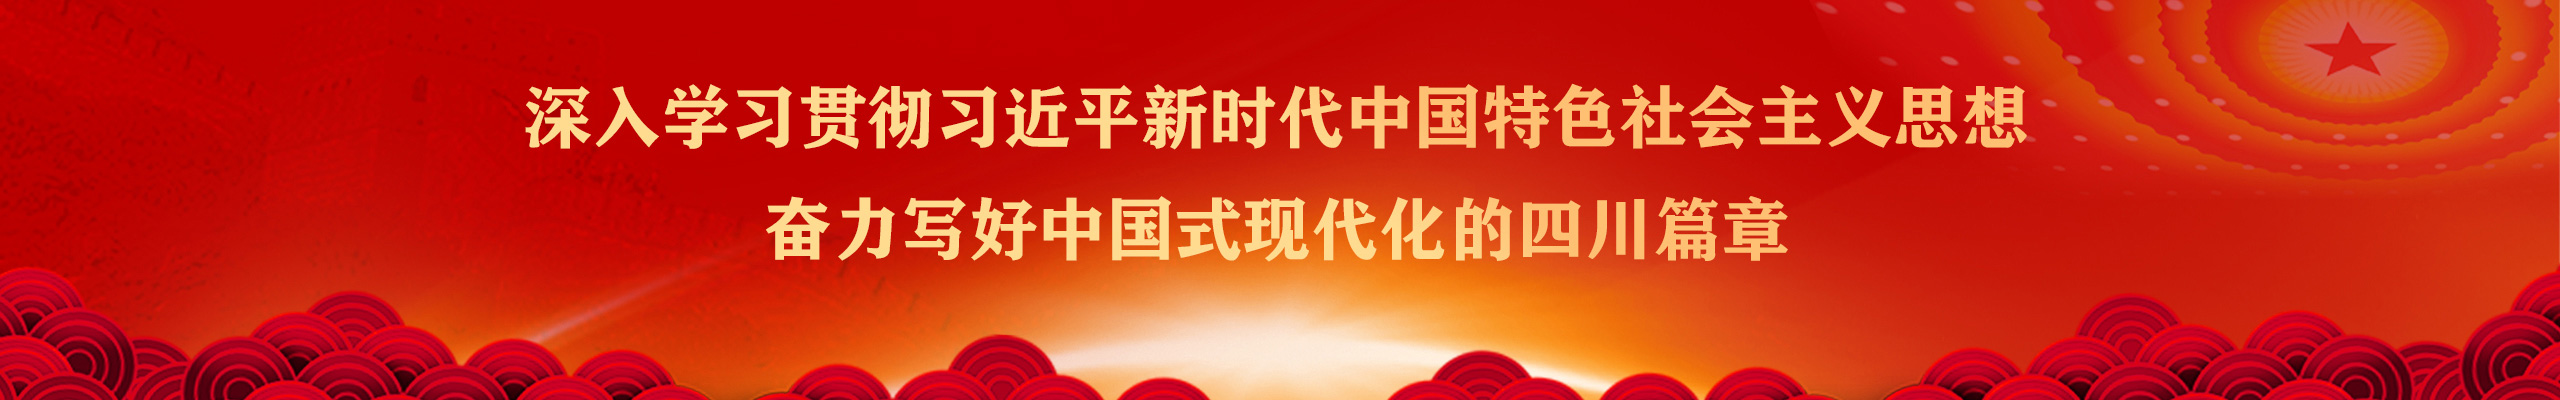 深入学习贯彻习近平新时代中国特色社会主义思想，奋力写好中国式现代化的四川篇章！